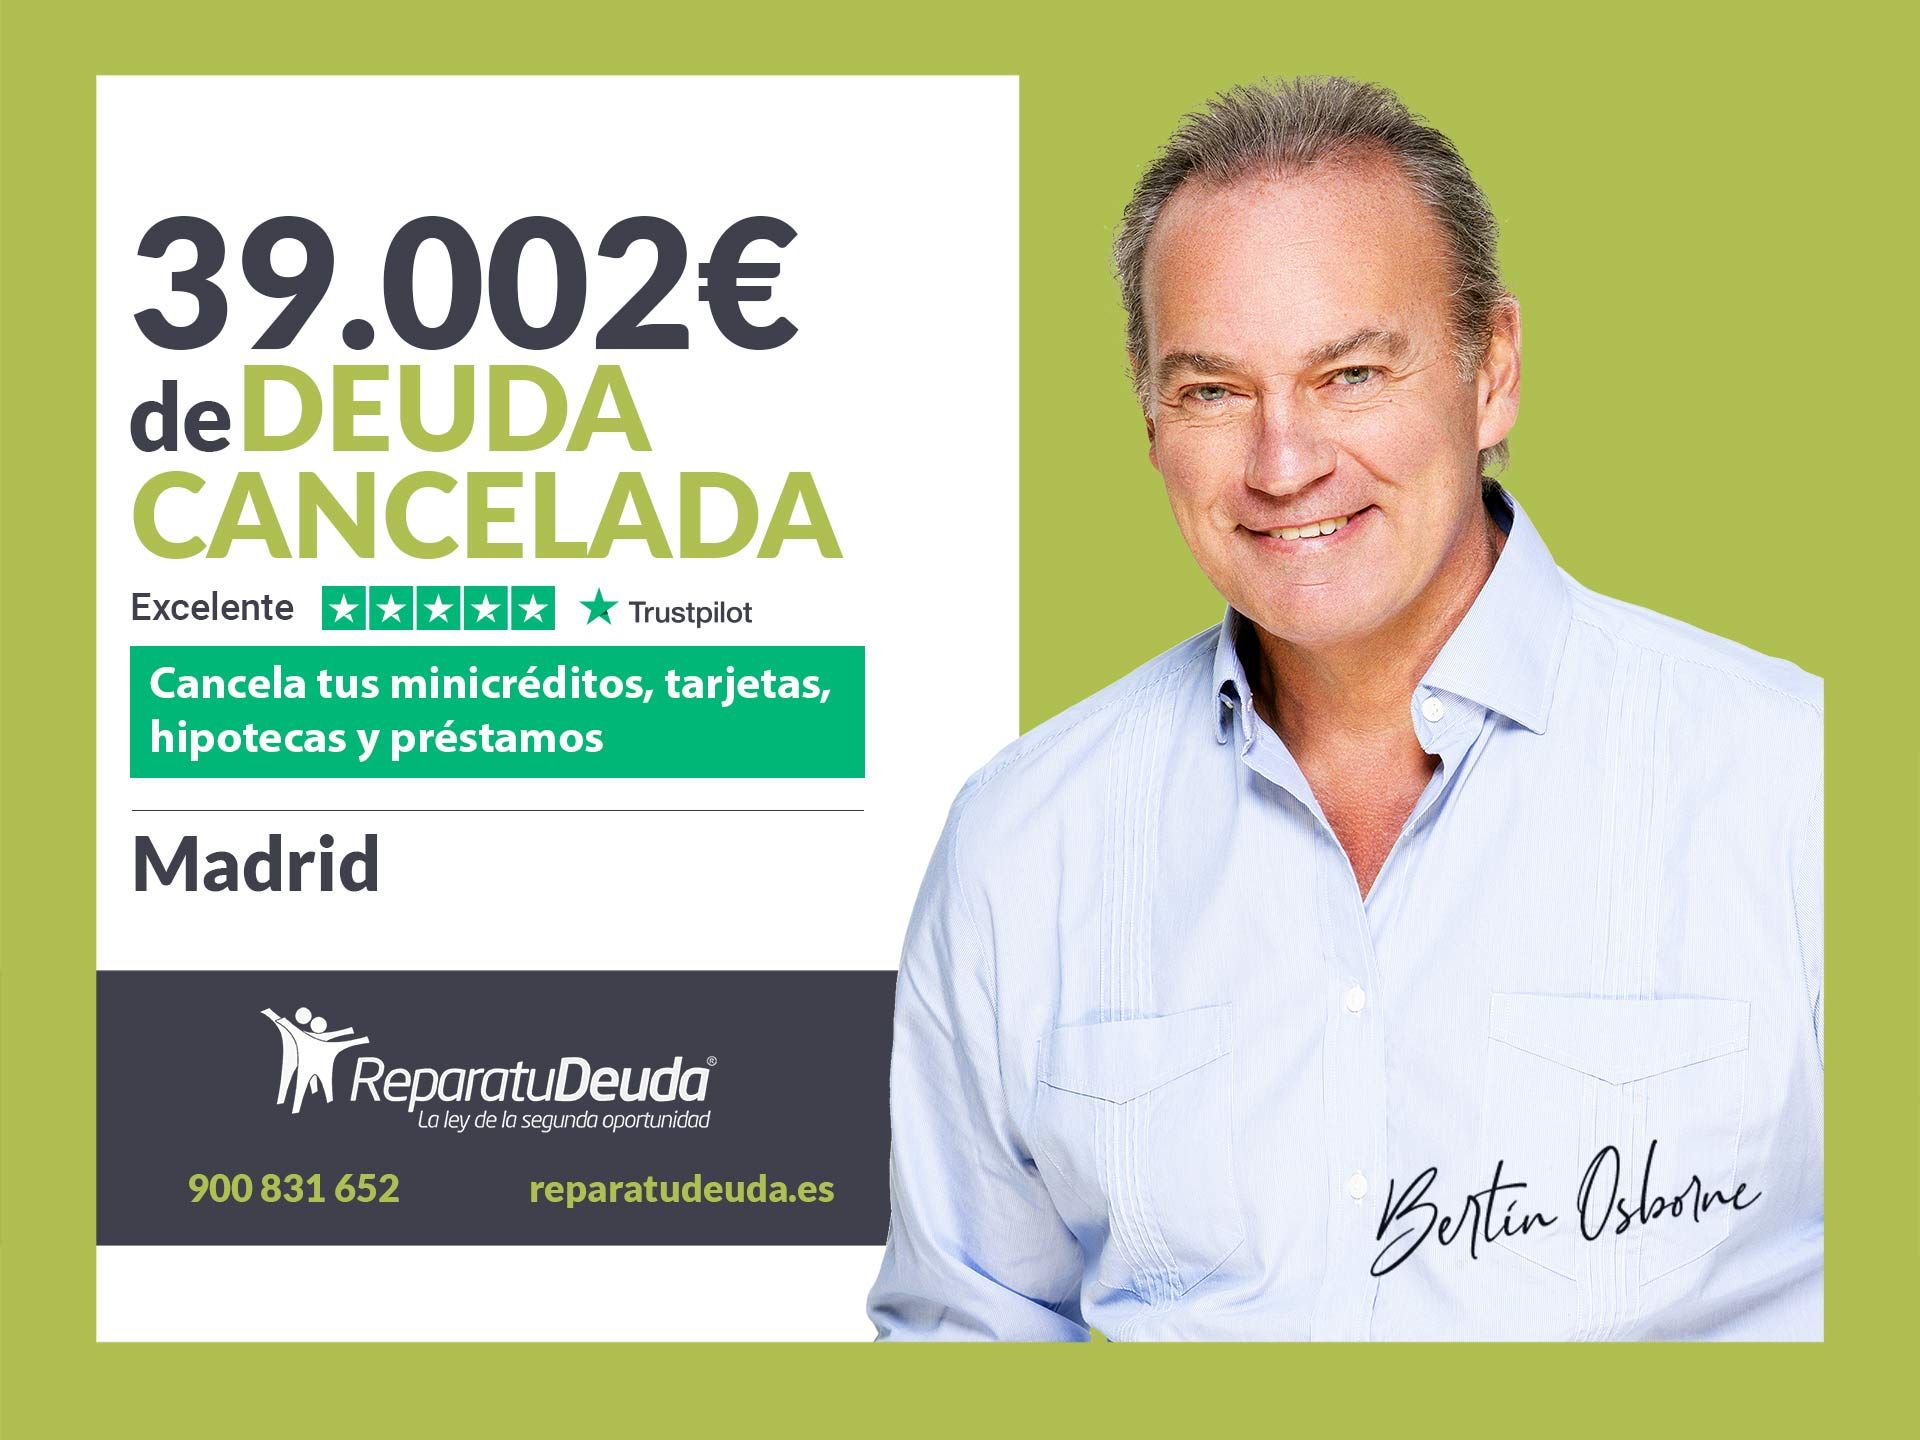 Repara tu Deuda Abogados cancela 39.002? en Madrid con la Ley de Segunda Oportunidad